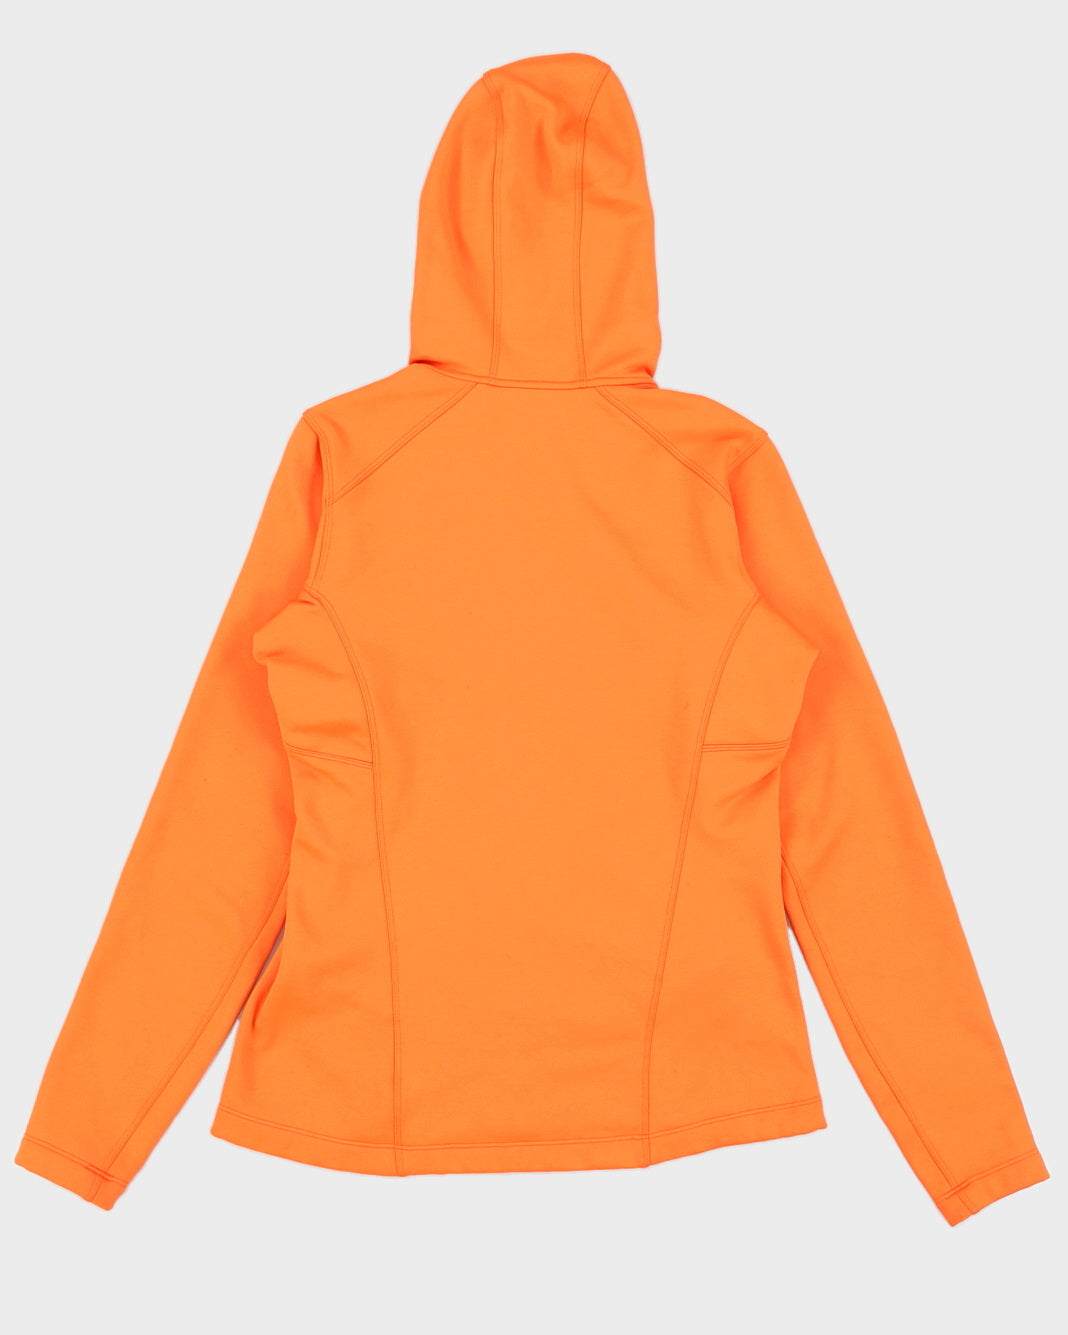 Arc'teryx Orange Full Zip Fleece - S